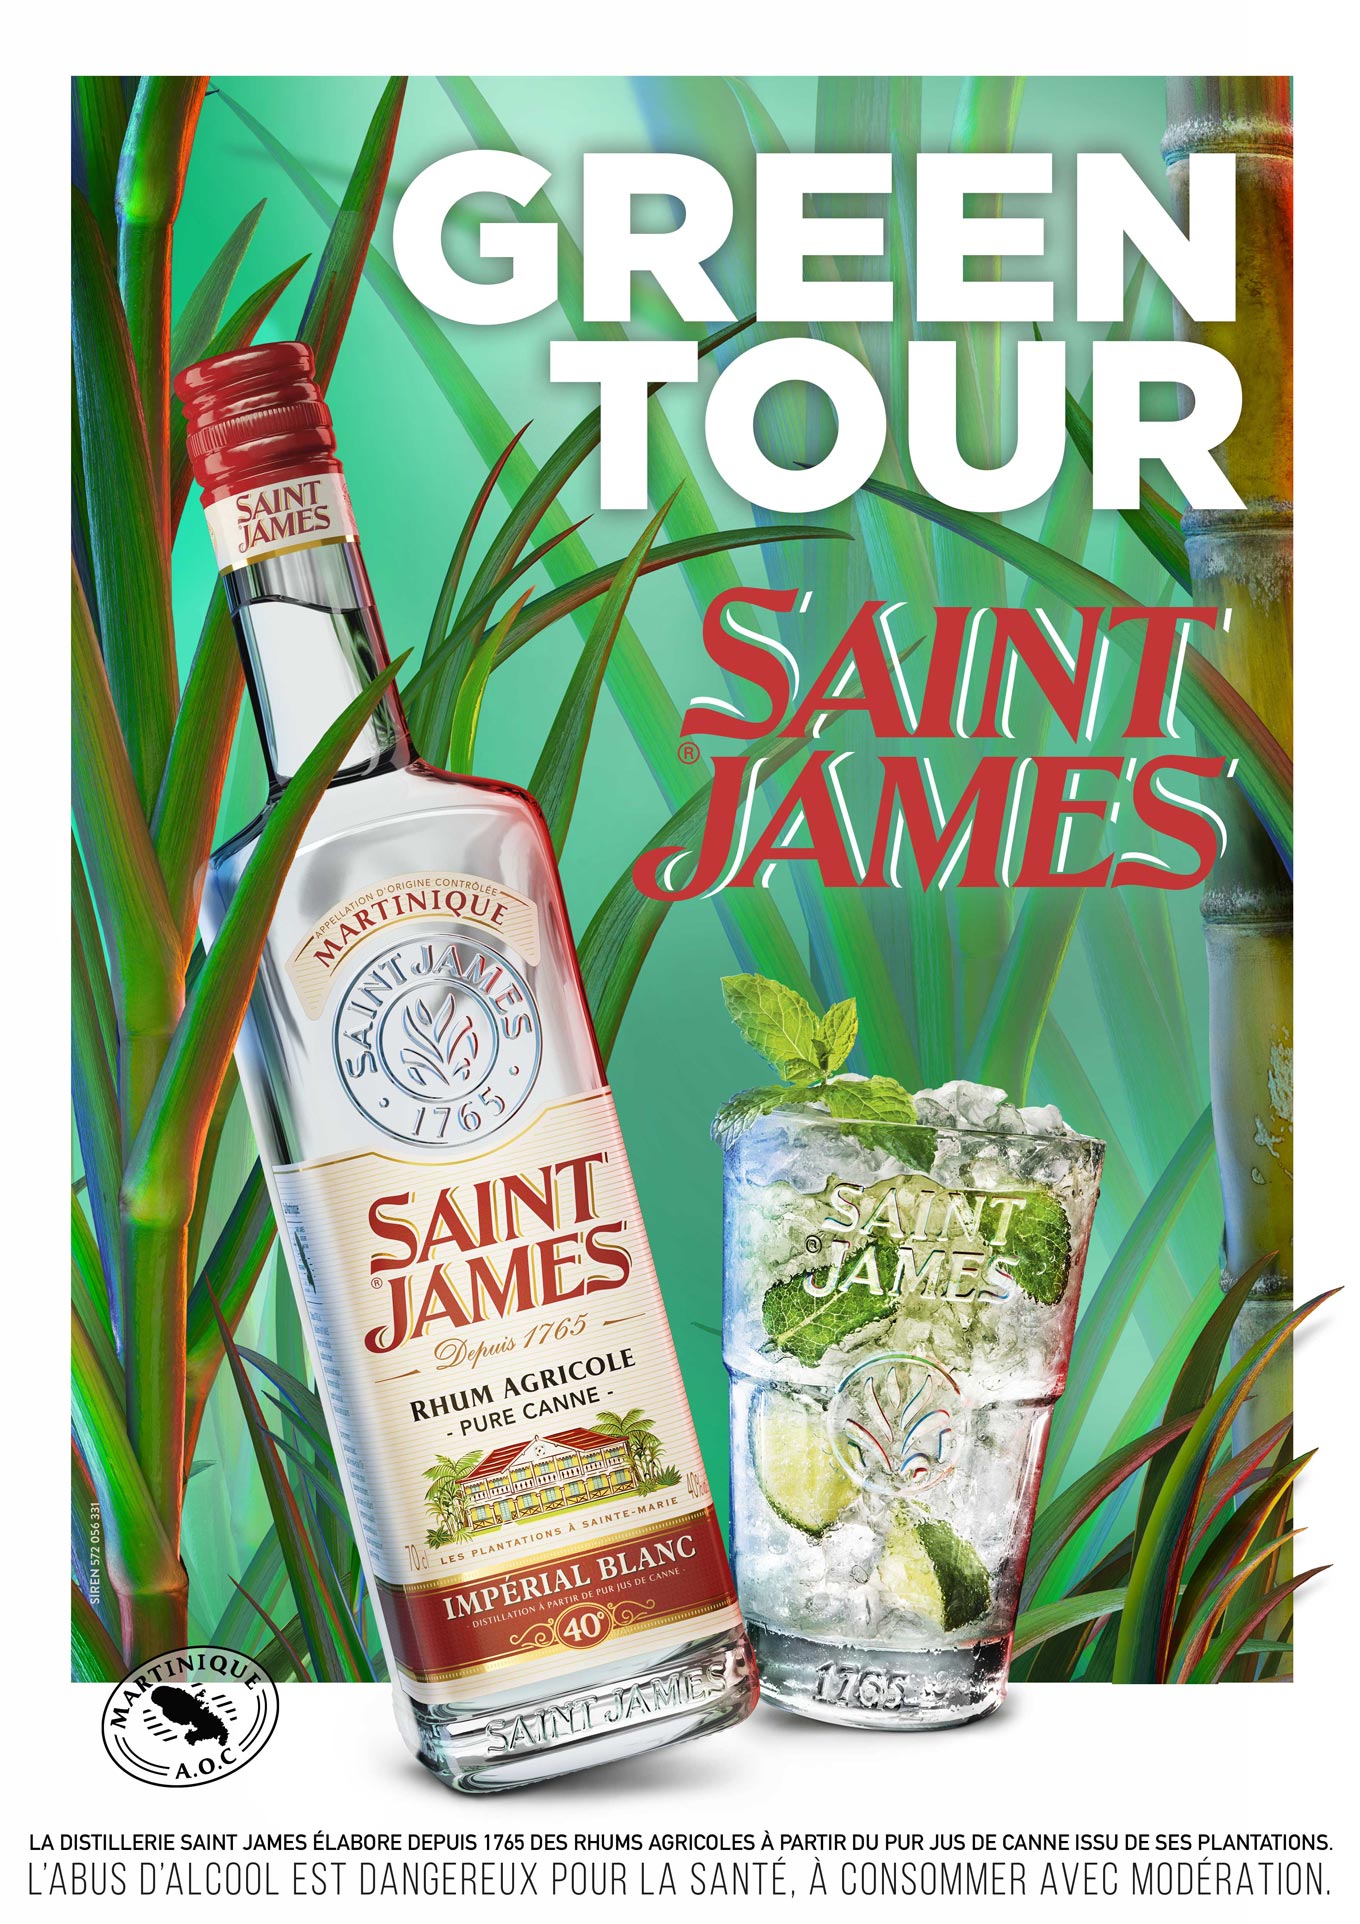 Soirée Saint James Green Tour